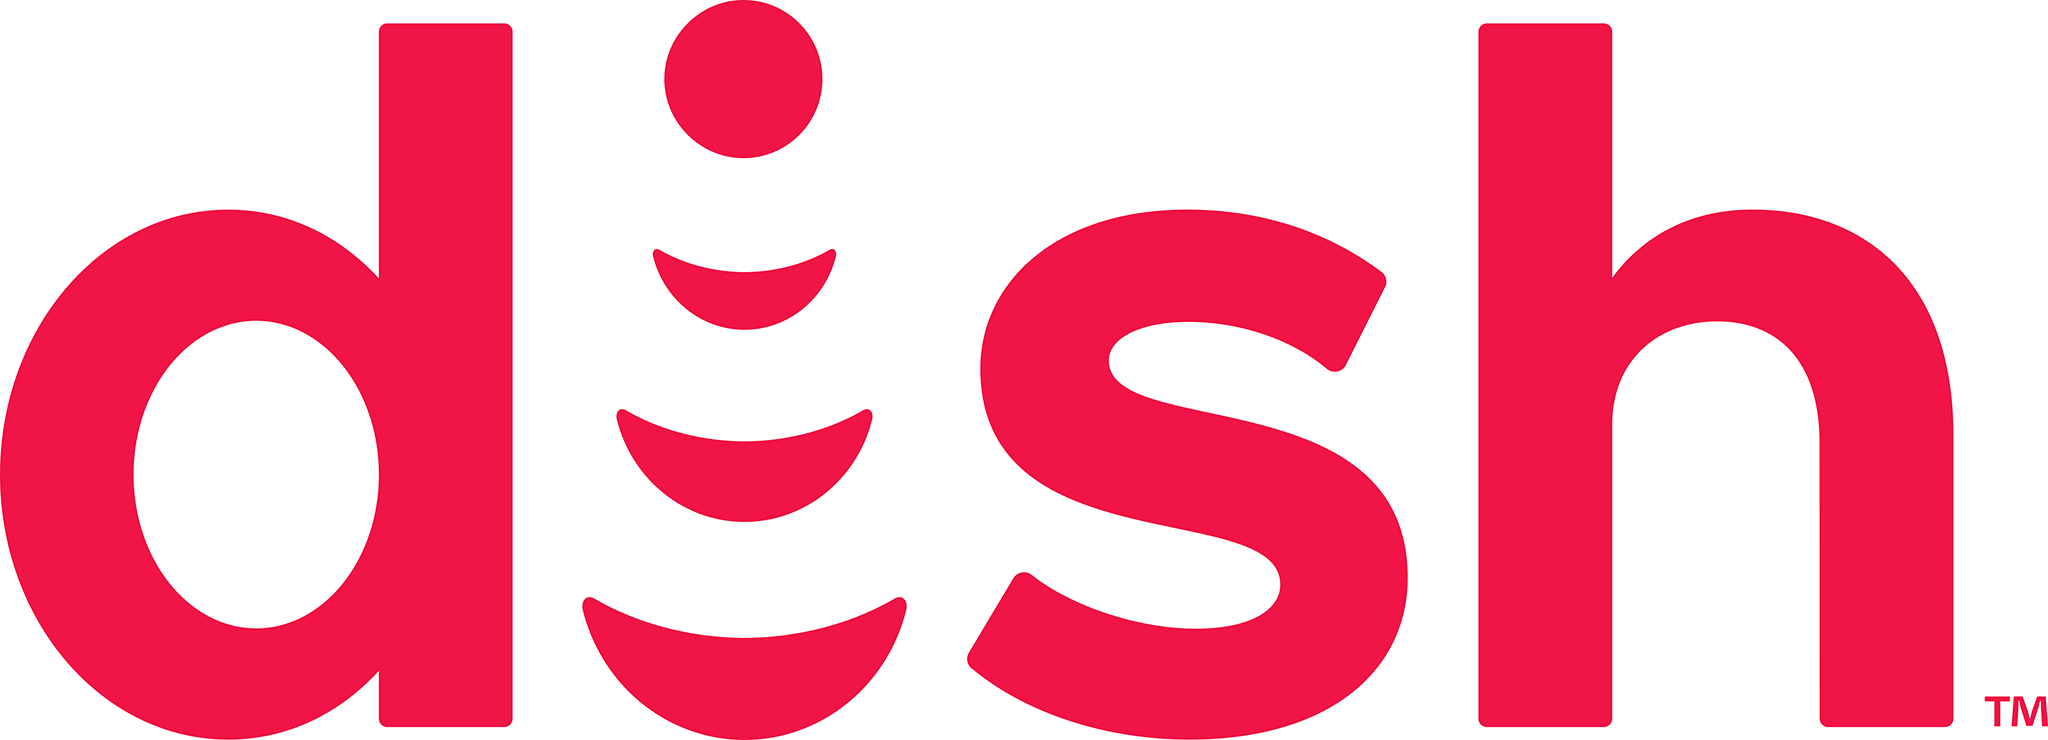 DISH_logo